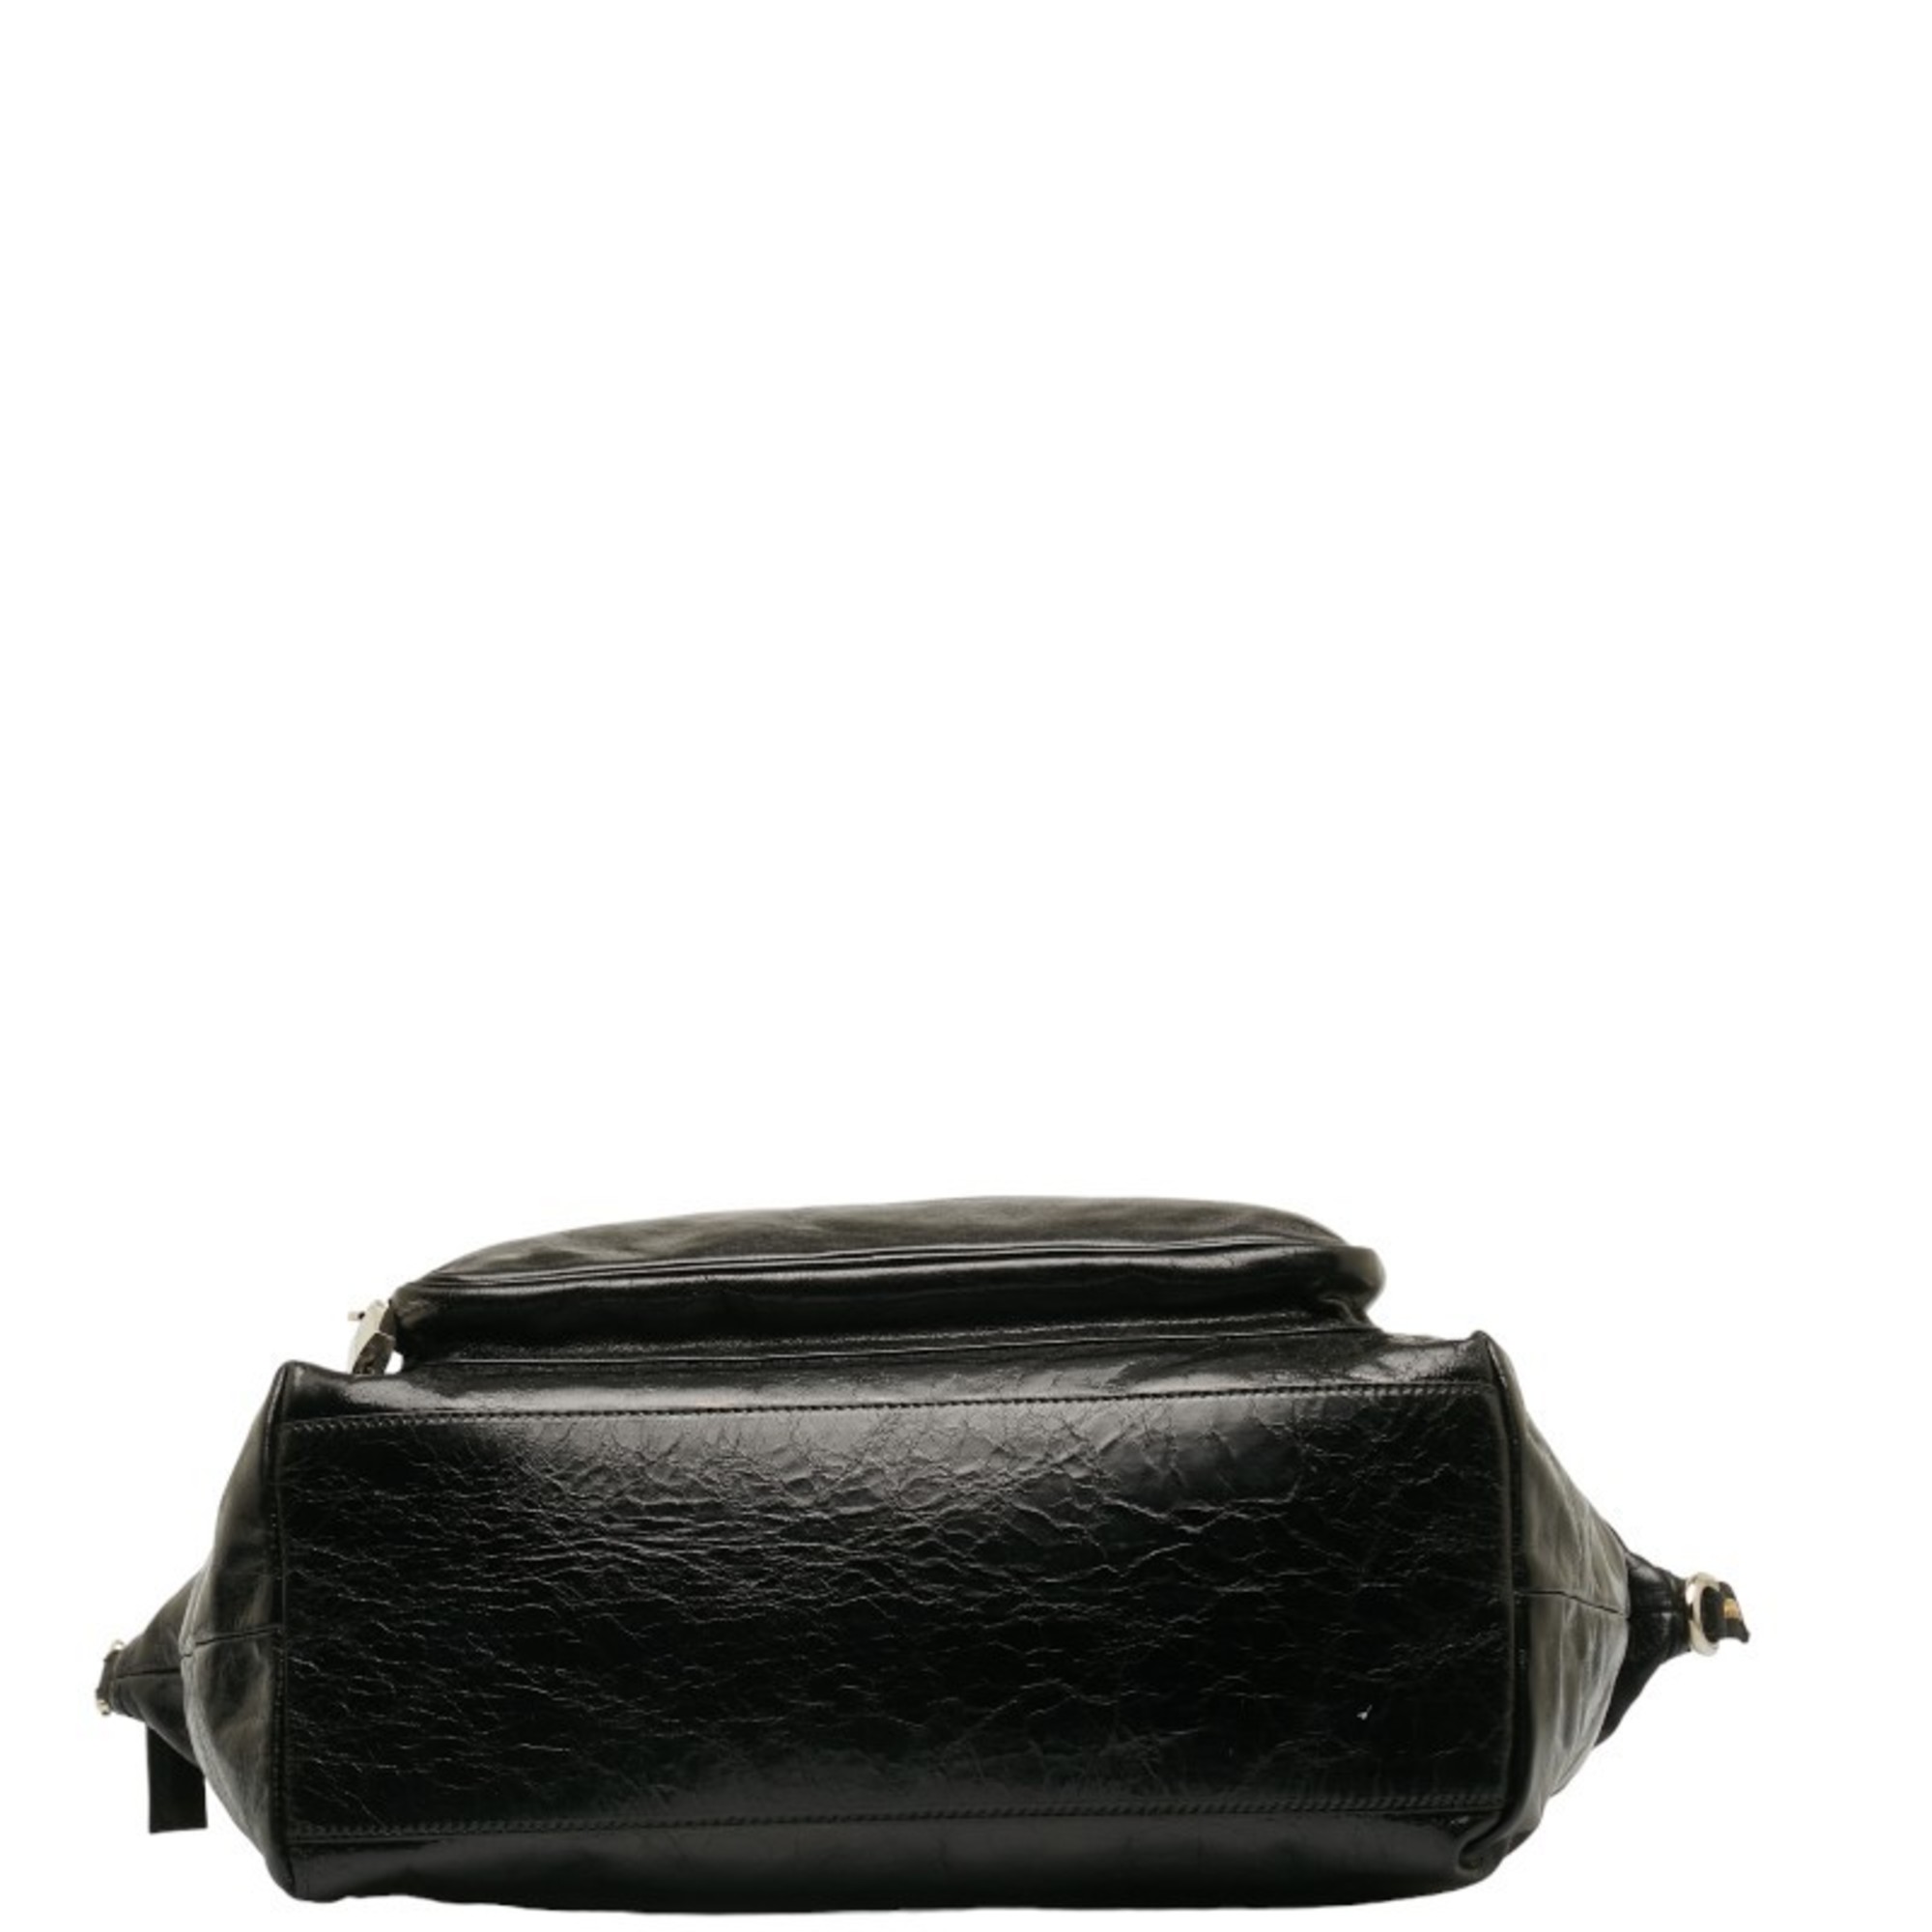 Dolce & Gabbana Leopard Handbag Chain Shoulder Bag Black Leather Women's DOLCE&GABBANA